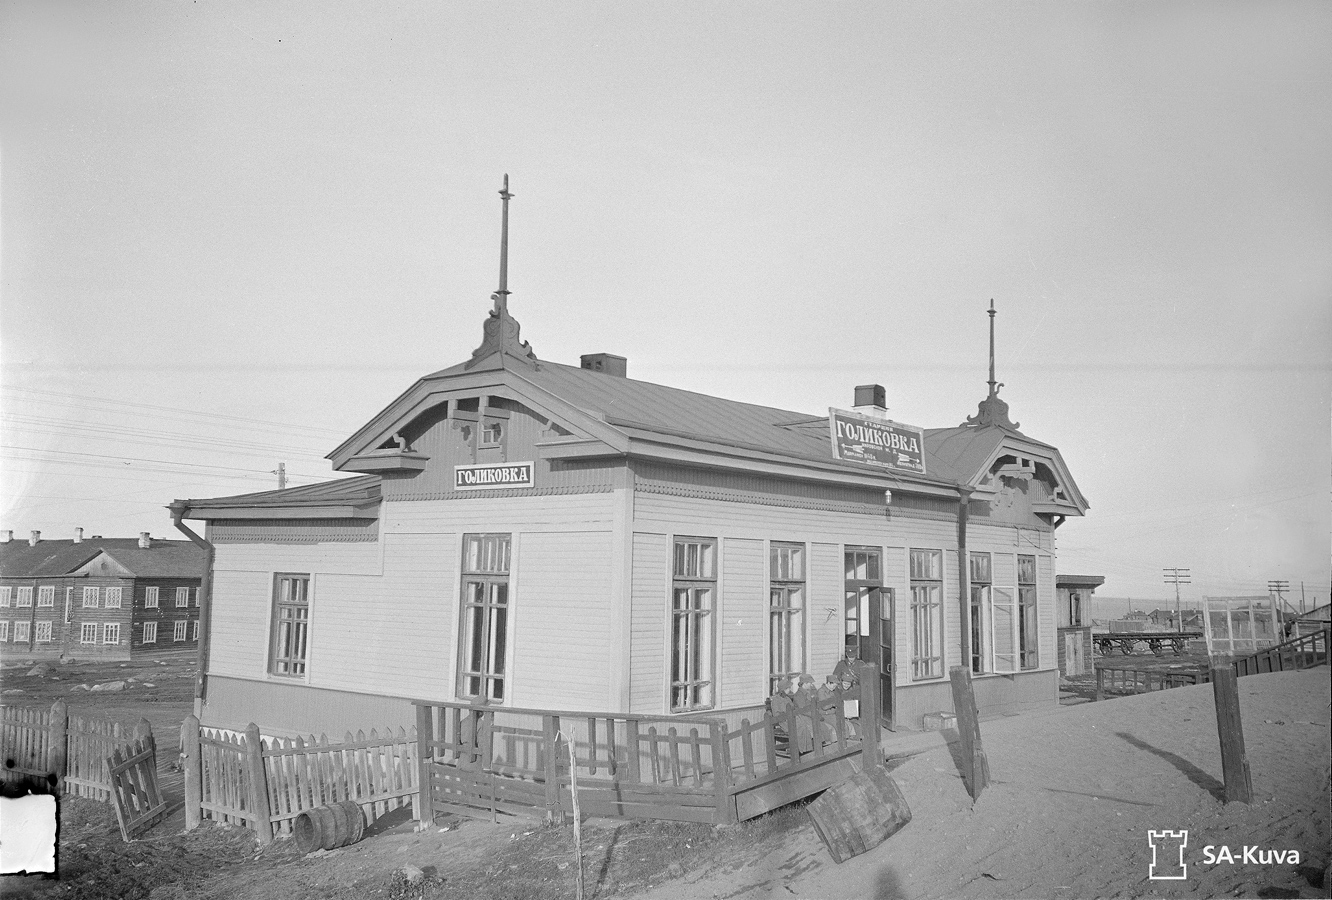 October 6, 1941. Golikovka station building